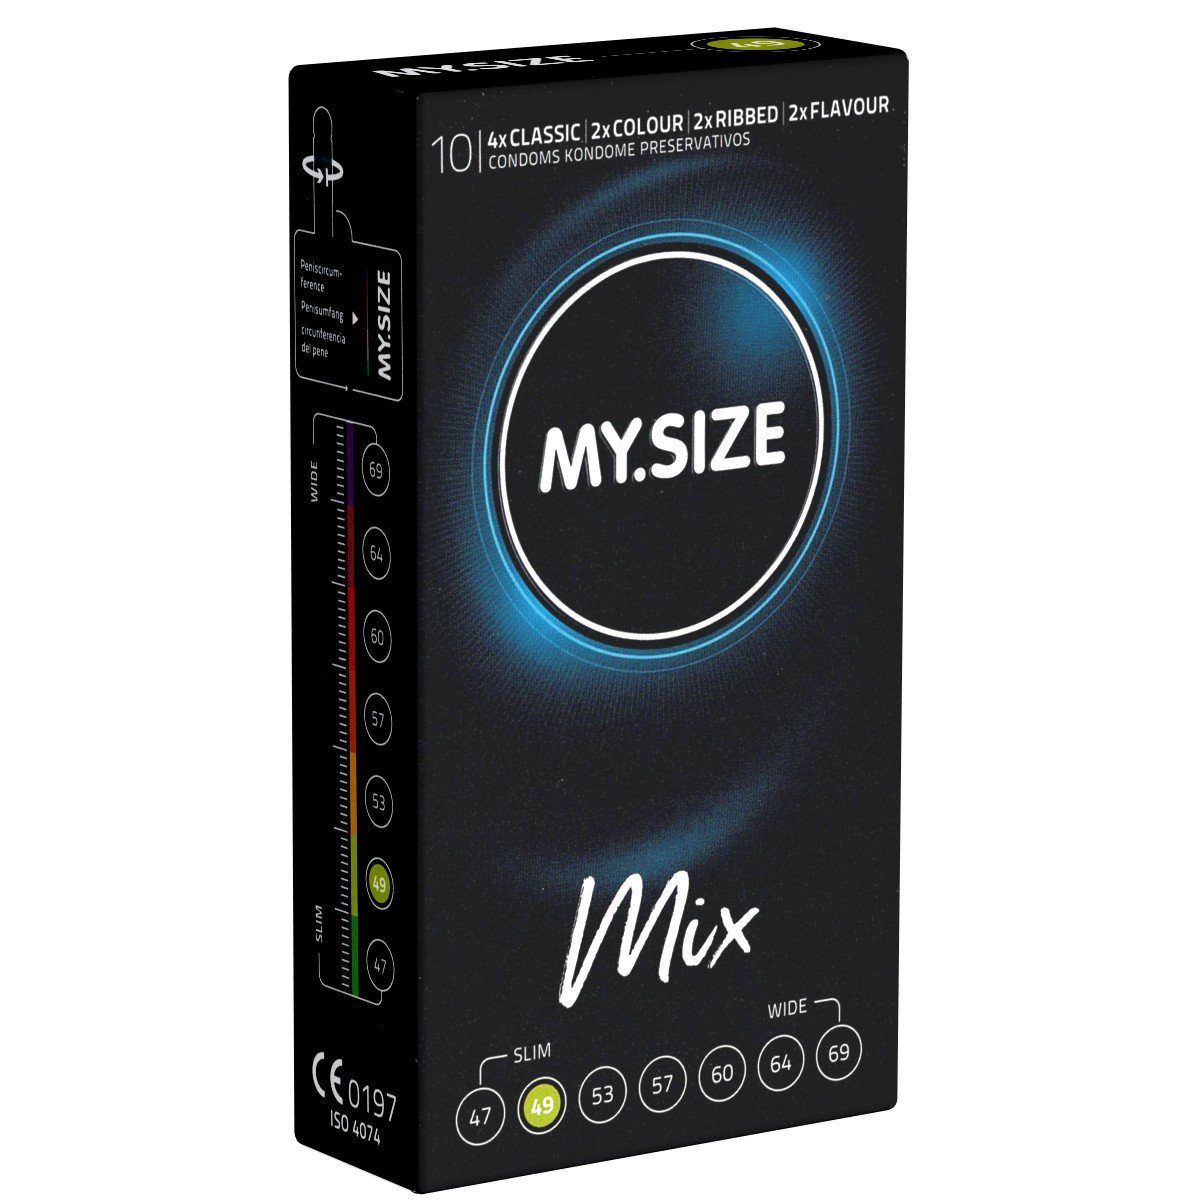 MY.SIZE Kondome Classic 49 MIX besten Sortiment, St., gemischten für 10 mit, Tragekomfort Sicherheit und Kondome im Packung